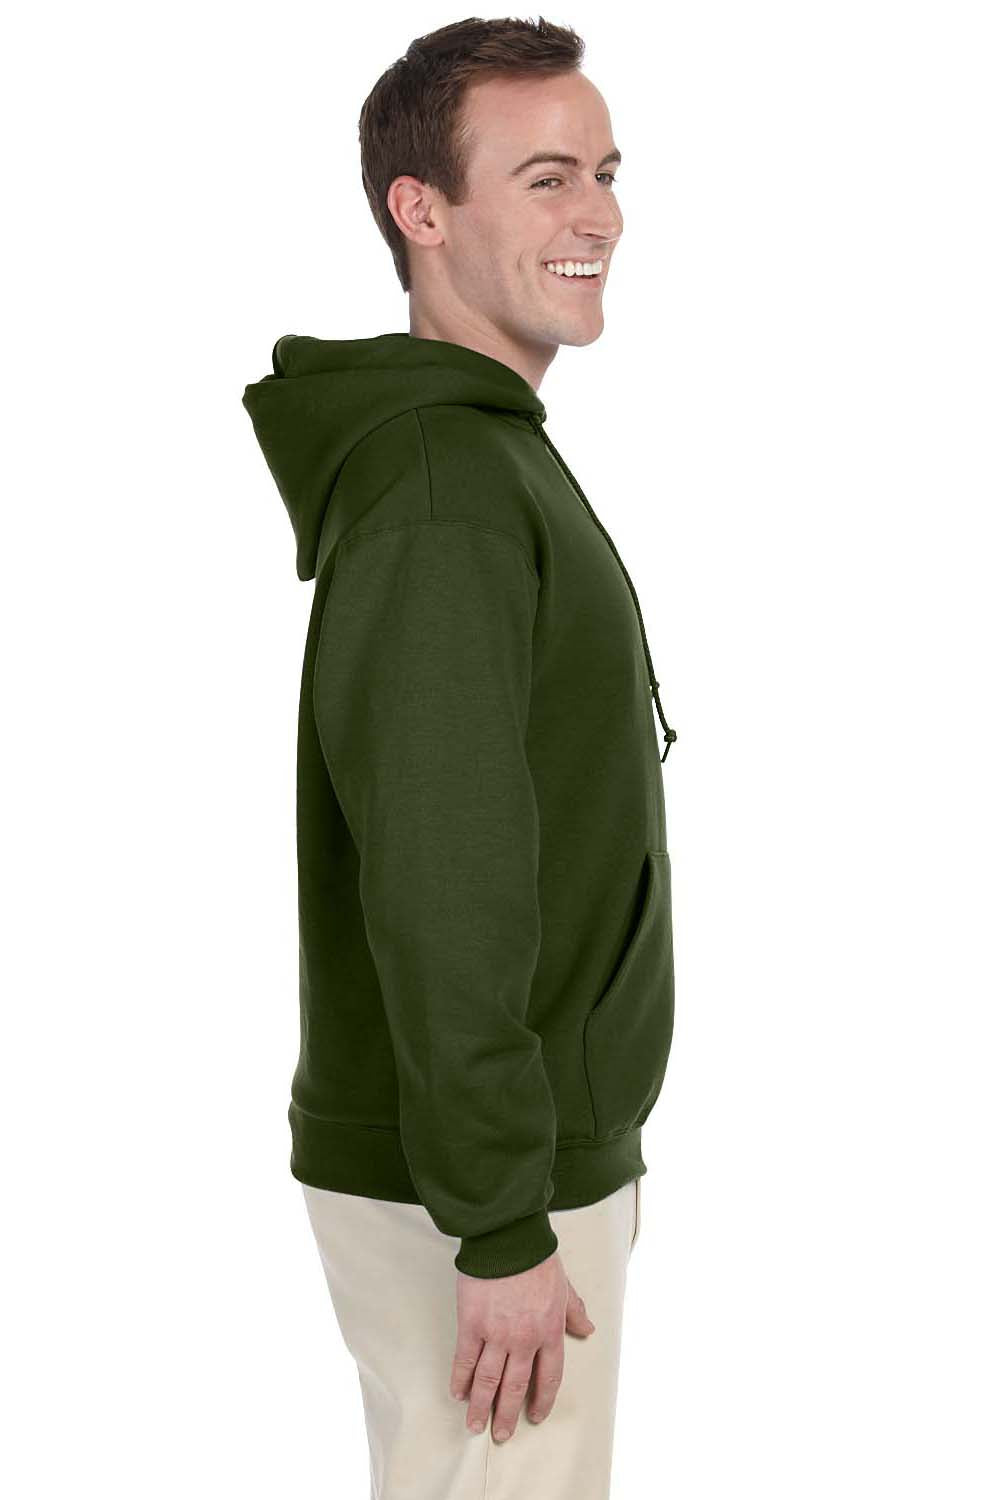 Jerzees 996 Mens NuBlend Fleece Hooded Sweatshirt Hoodie Military Green Side